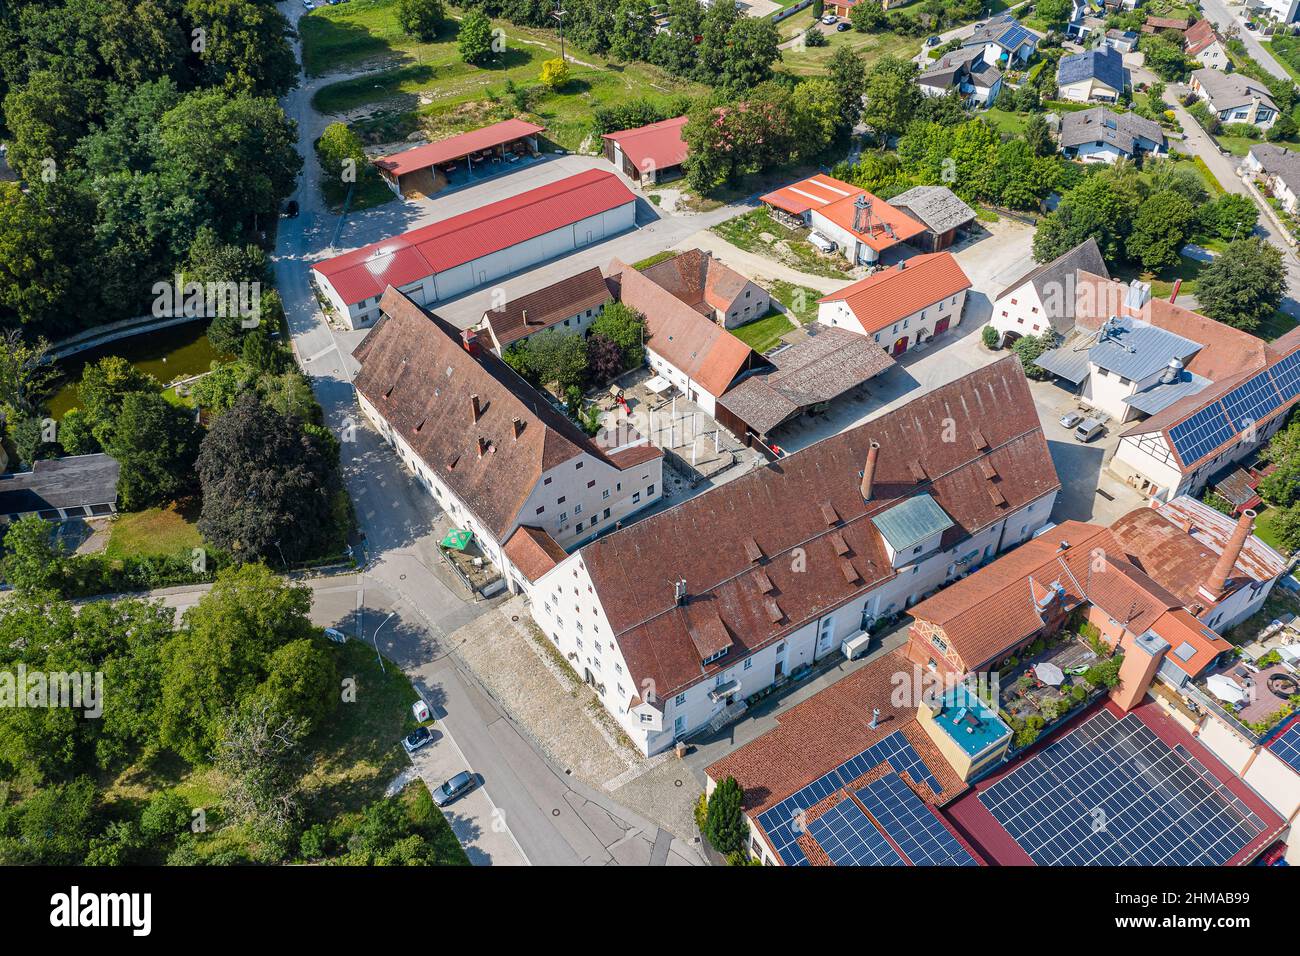 Luftbild Beilngries im Naturpark Altmühltal, Bayern, Alemania, mit dem ehemaligen Brauereigelände, Heute Gastro-, Freizeit- und Ladenkomplex Foto de stock